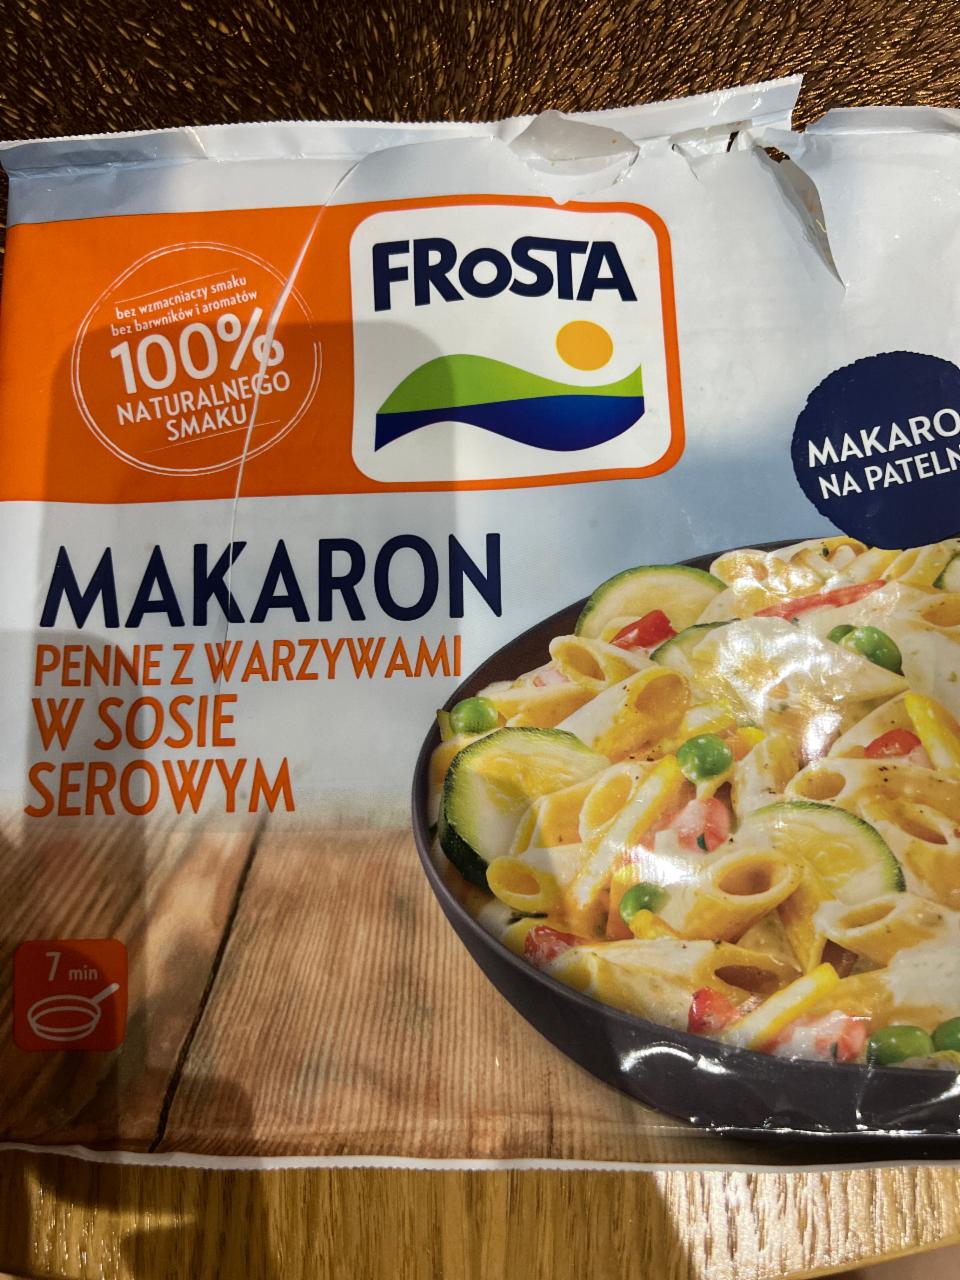 Zdjęcia - FRoSTA Makaron penne z warzywami w sosie serowym 450 g